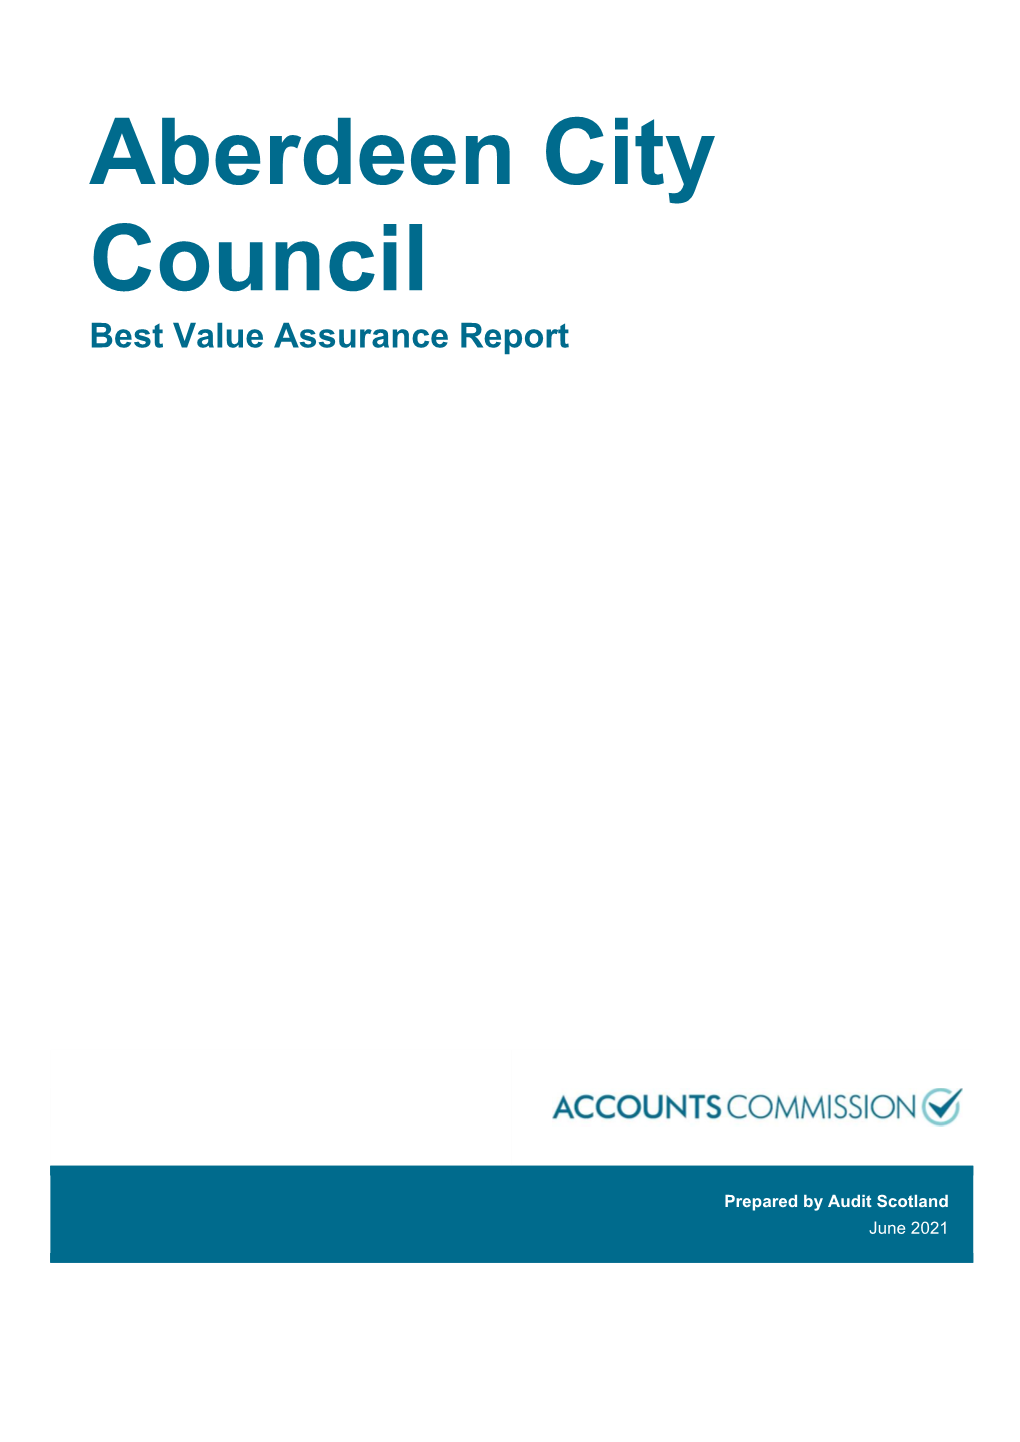 Aberdeen City Council Best Value Assurance Report